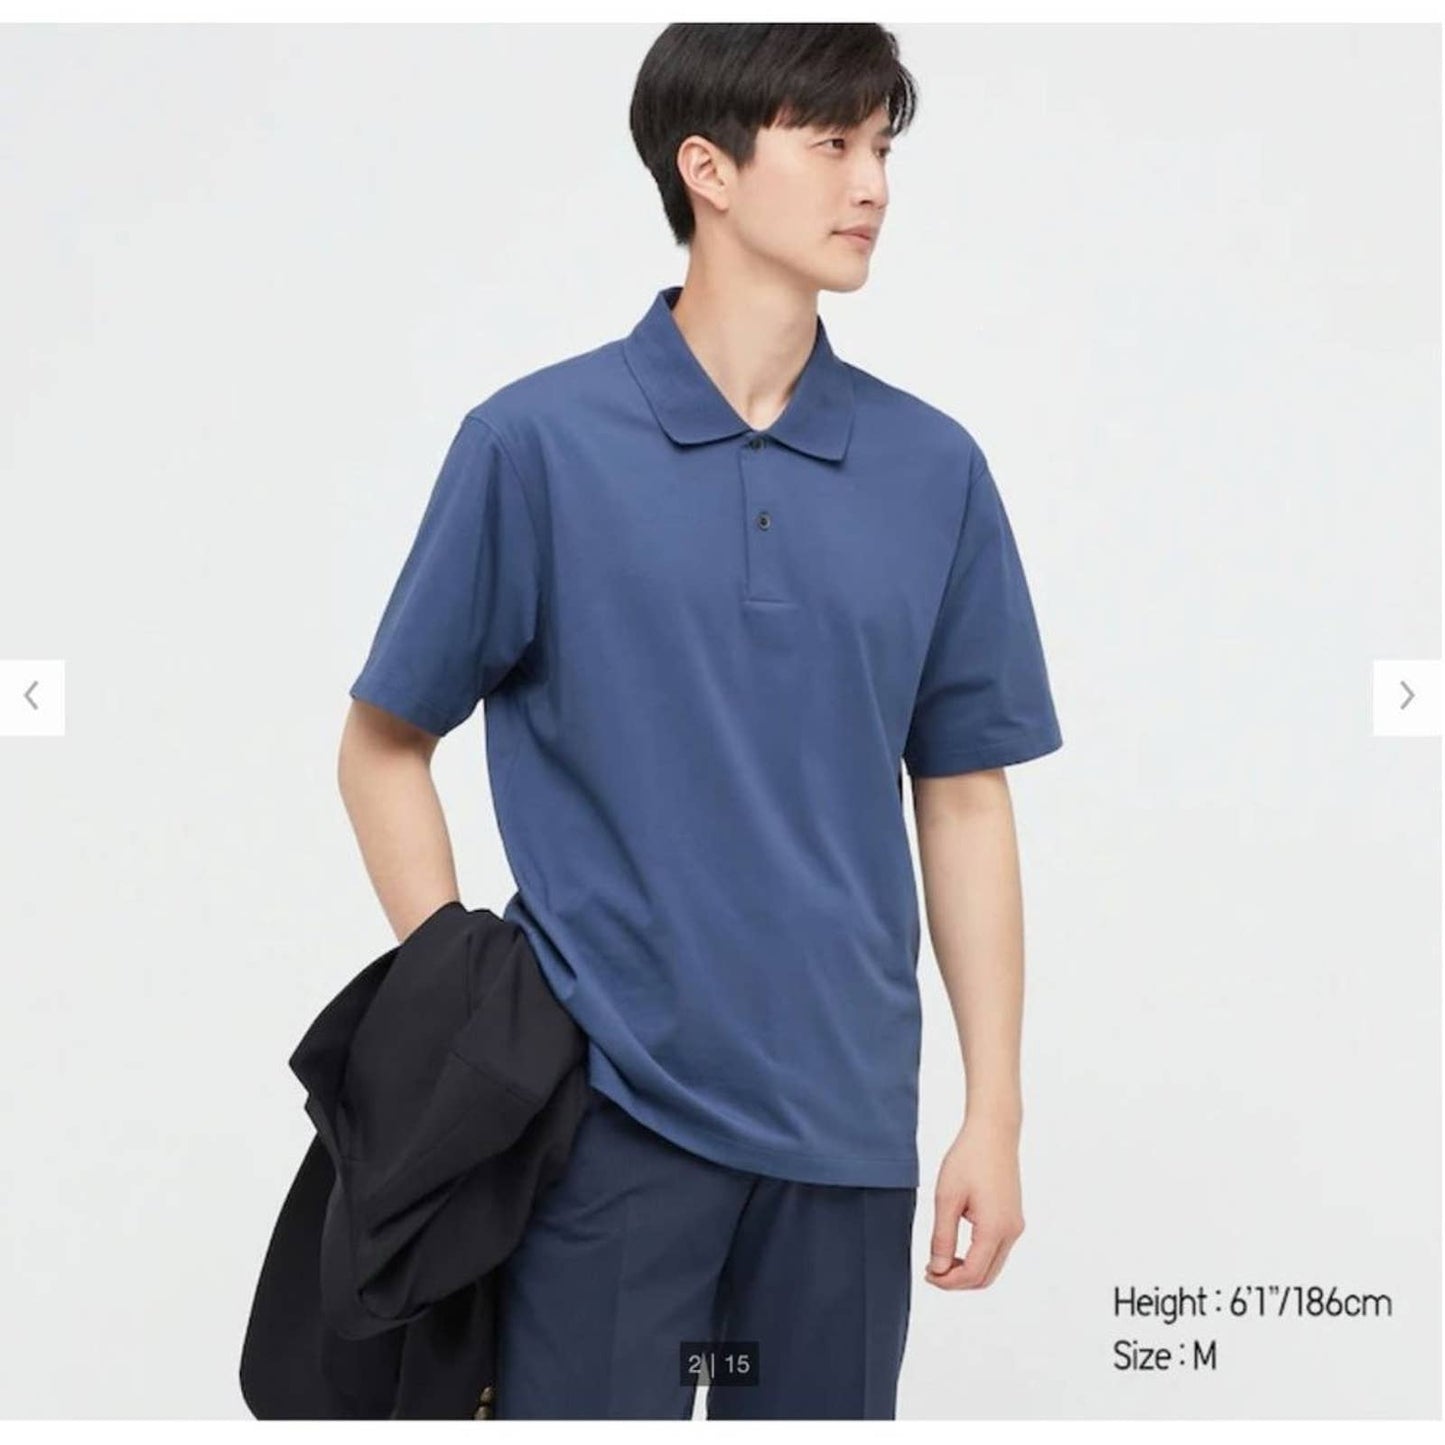 Uniqlo sz M AIRism short sleeve blue Polo Shirt NWT